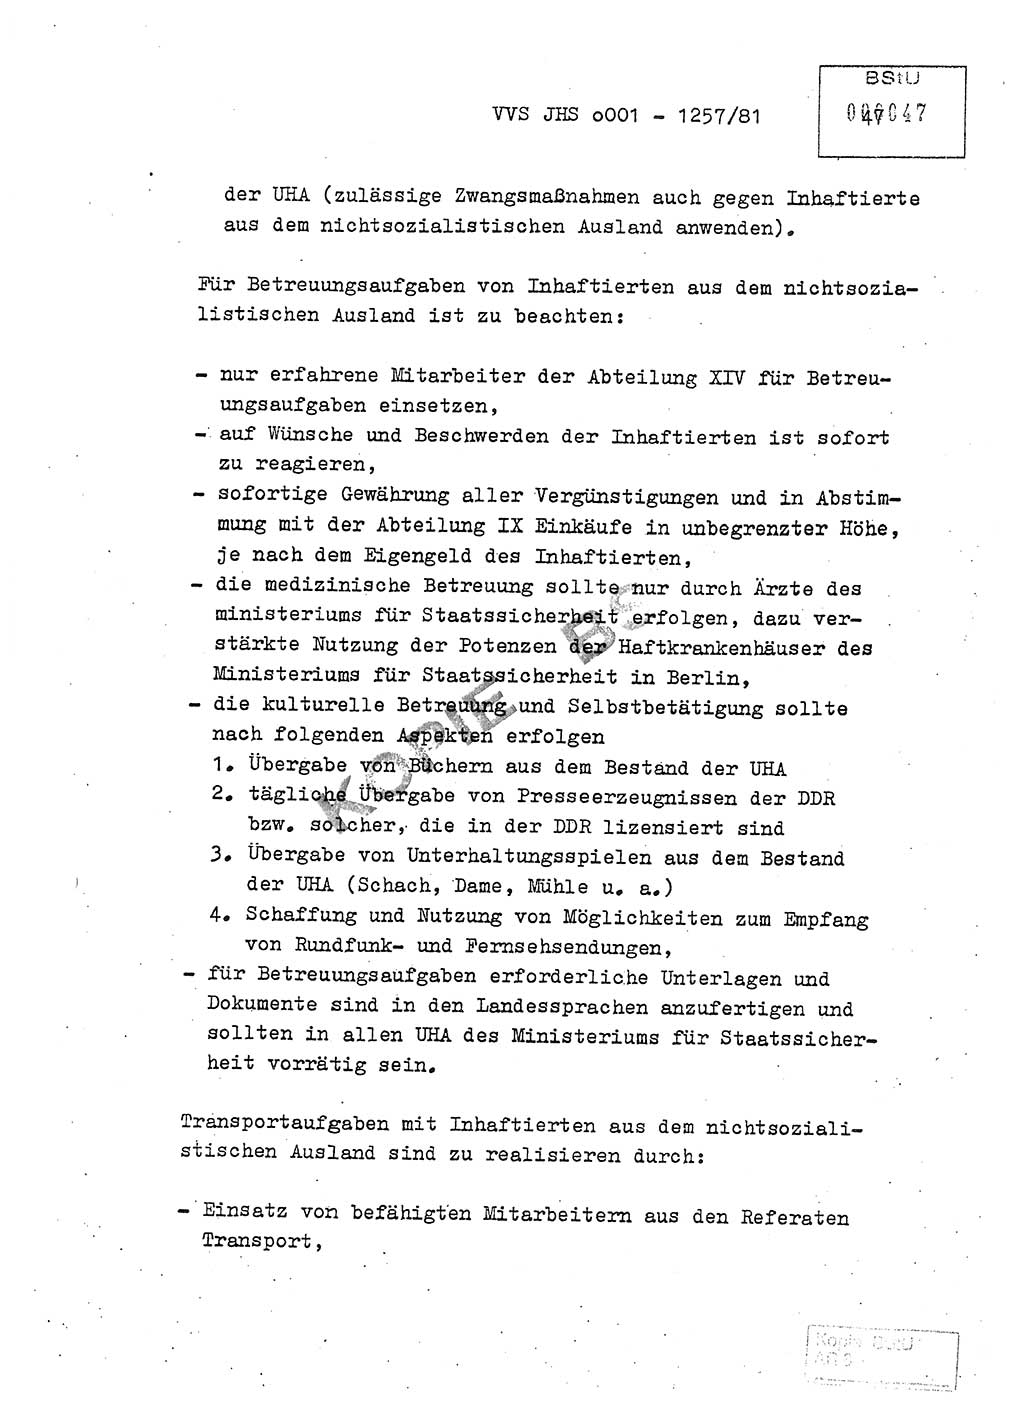 Fachschulabschlußarbeit Unterleutnant Dieter Möller (BV Rst. Abt. ⅩⅣ), Ministerium für Staatssicherheit (MfS) [Deutsche Demokratische Republik (DDR)], Juristische Hochschule (JHS), Vertrauliche Verschlußsache (VVS) o001-1257/81, Potsdam 1982, Seite 47 (FS-Abschl.-Arb. MfS DDR JHS VVS o001-1257/81 1982, S. 47)